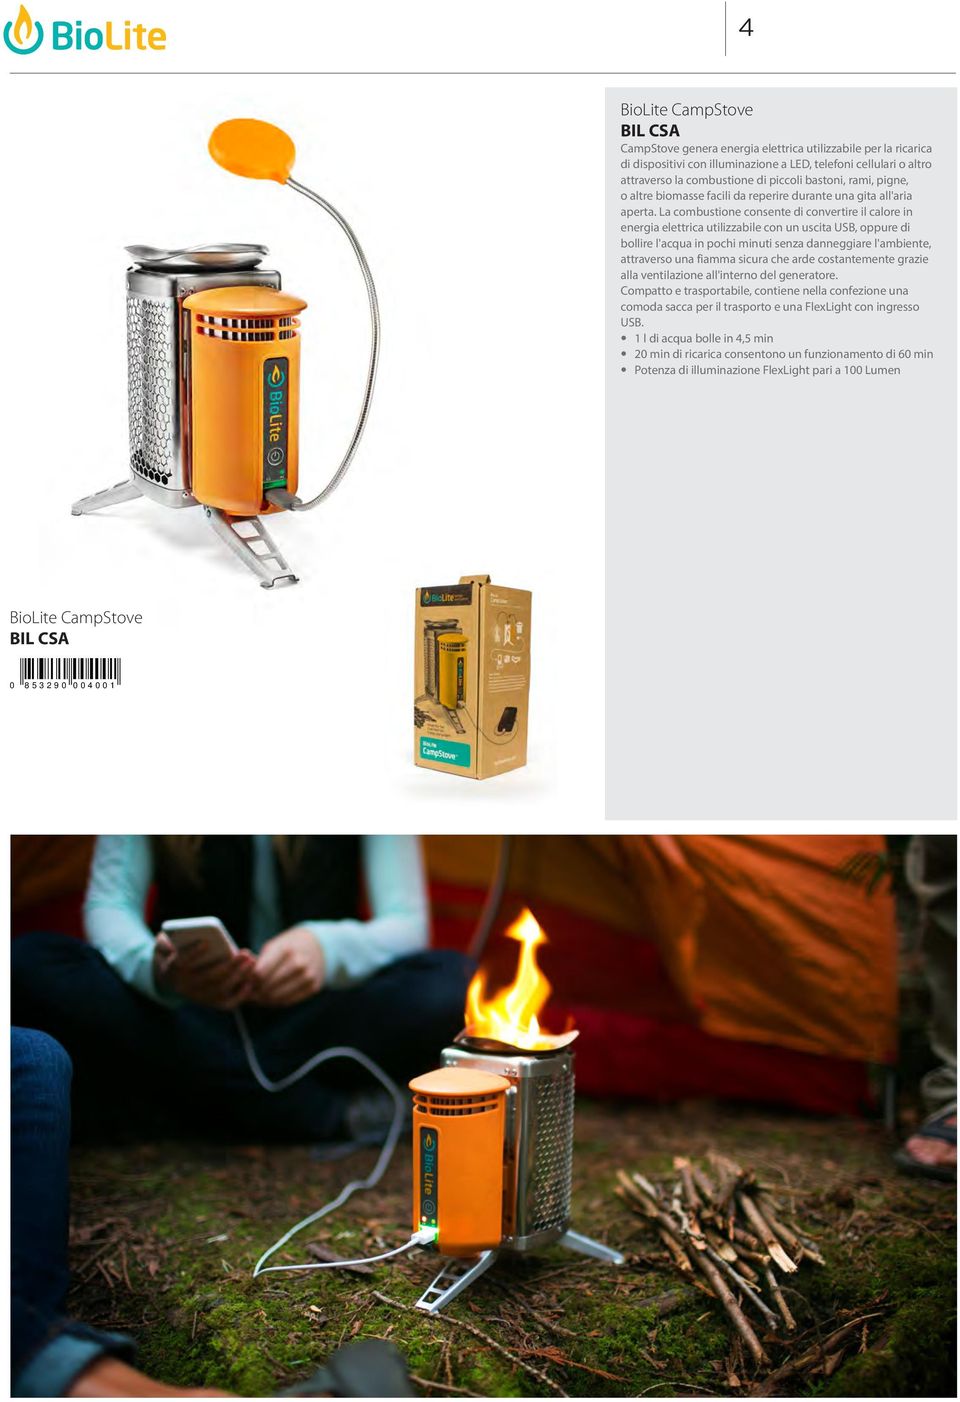 La combustione consente di convertire il calore in energia elettrica utilizzabile con un uscita USB, oppure di bollire l'acqua in pochi minuti senza danneggiare l'ambiente, attraverso una fiamma